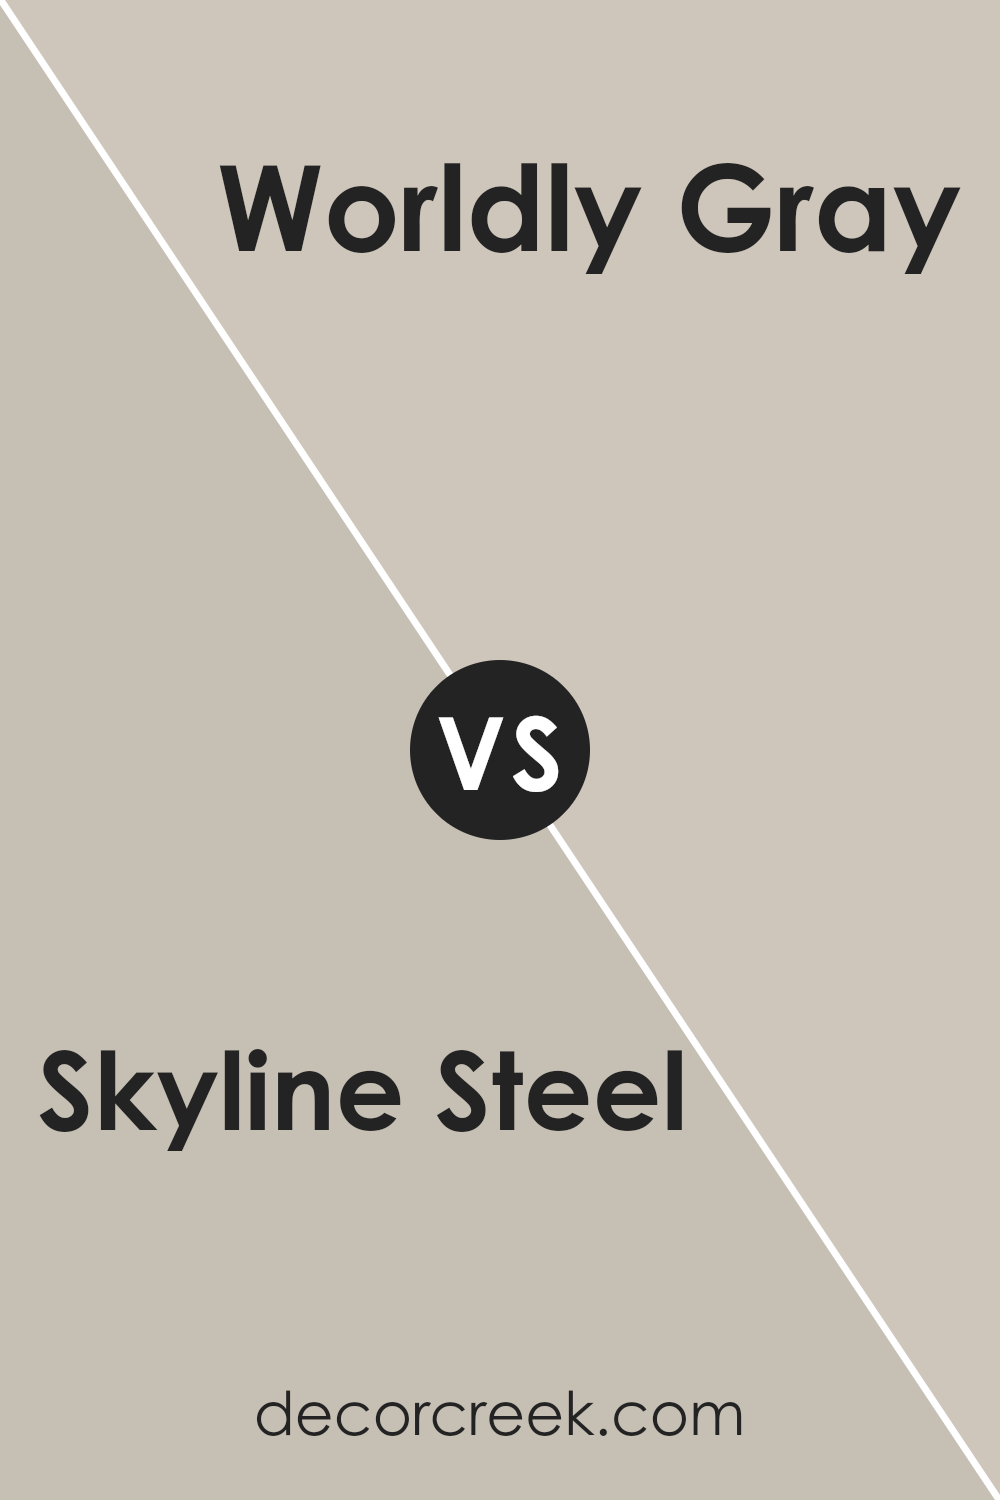 skyline_steel_sw_1015_vs_worldly_gray_sw_7043